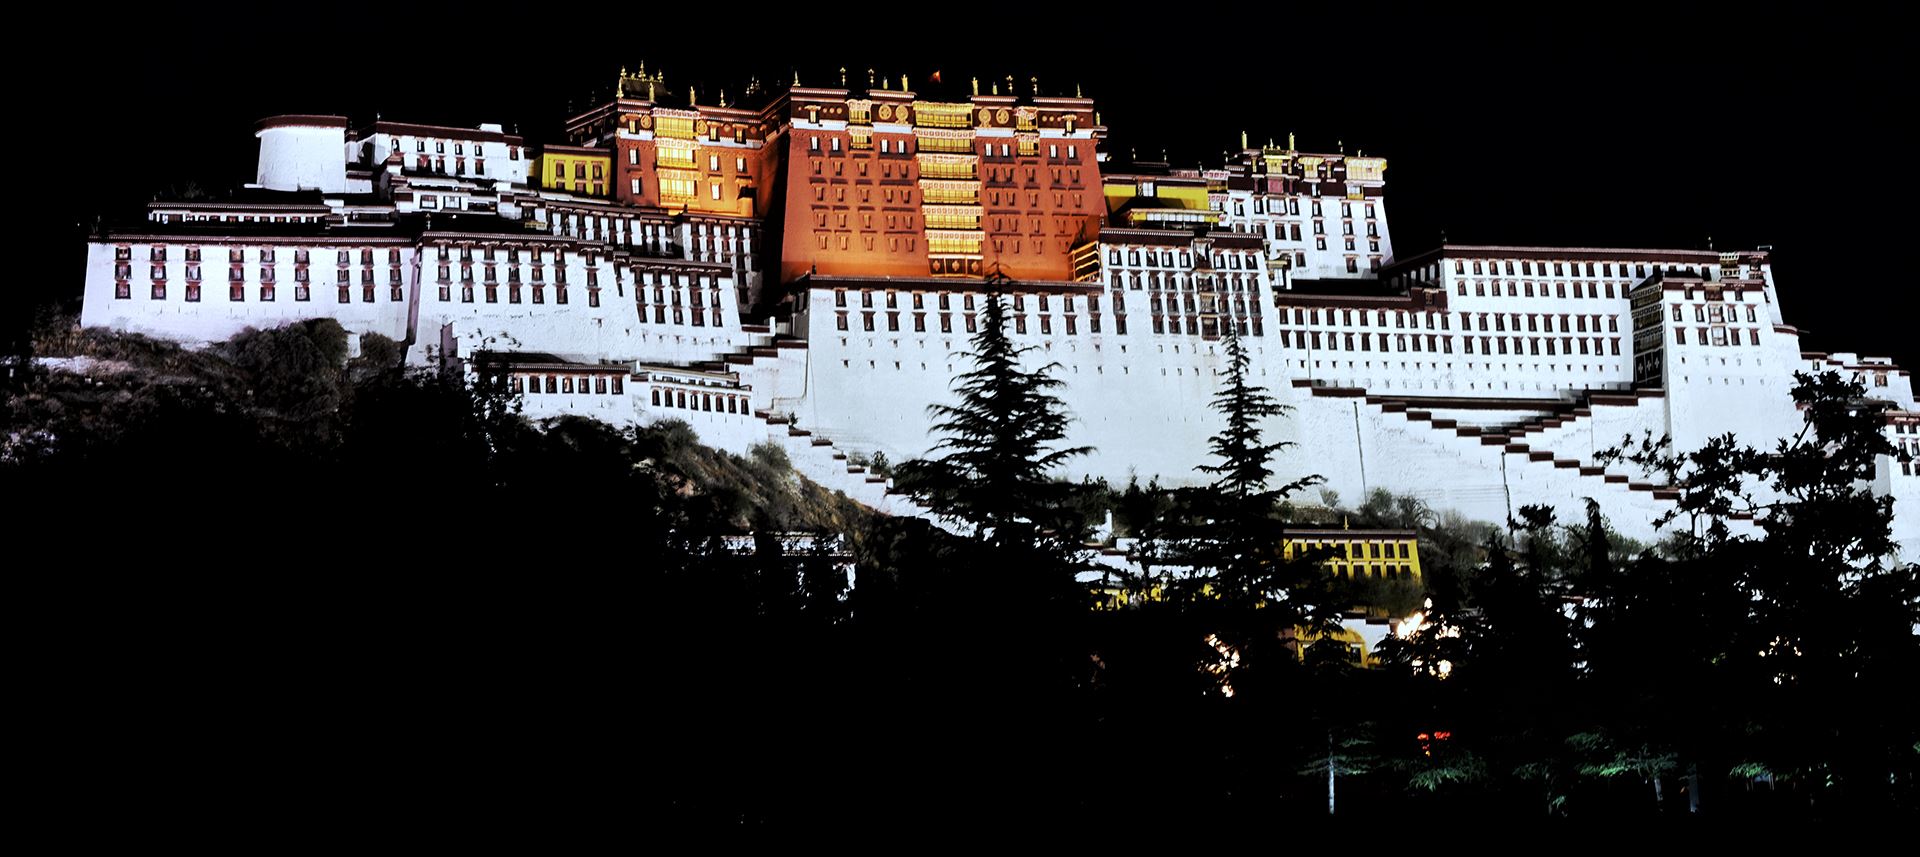 Voyage Classique au Tibet avec le Train de Lhassa à Lanzhou